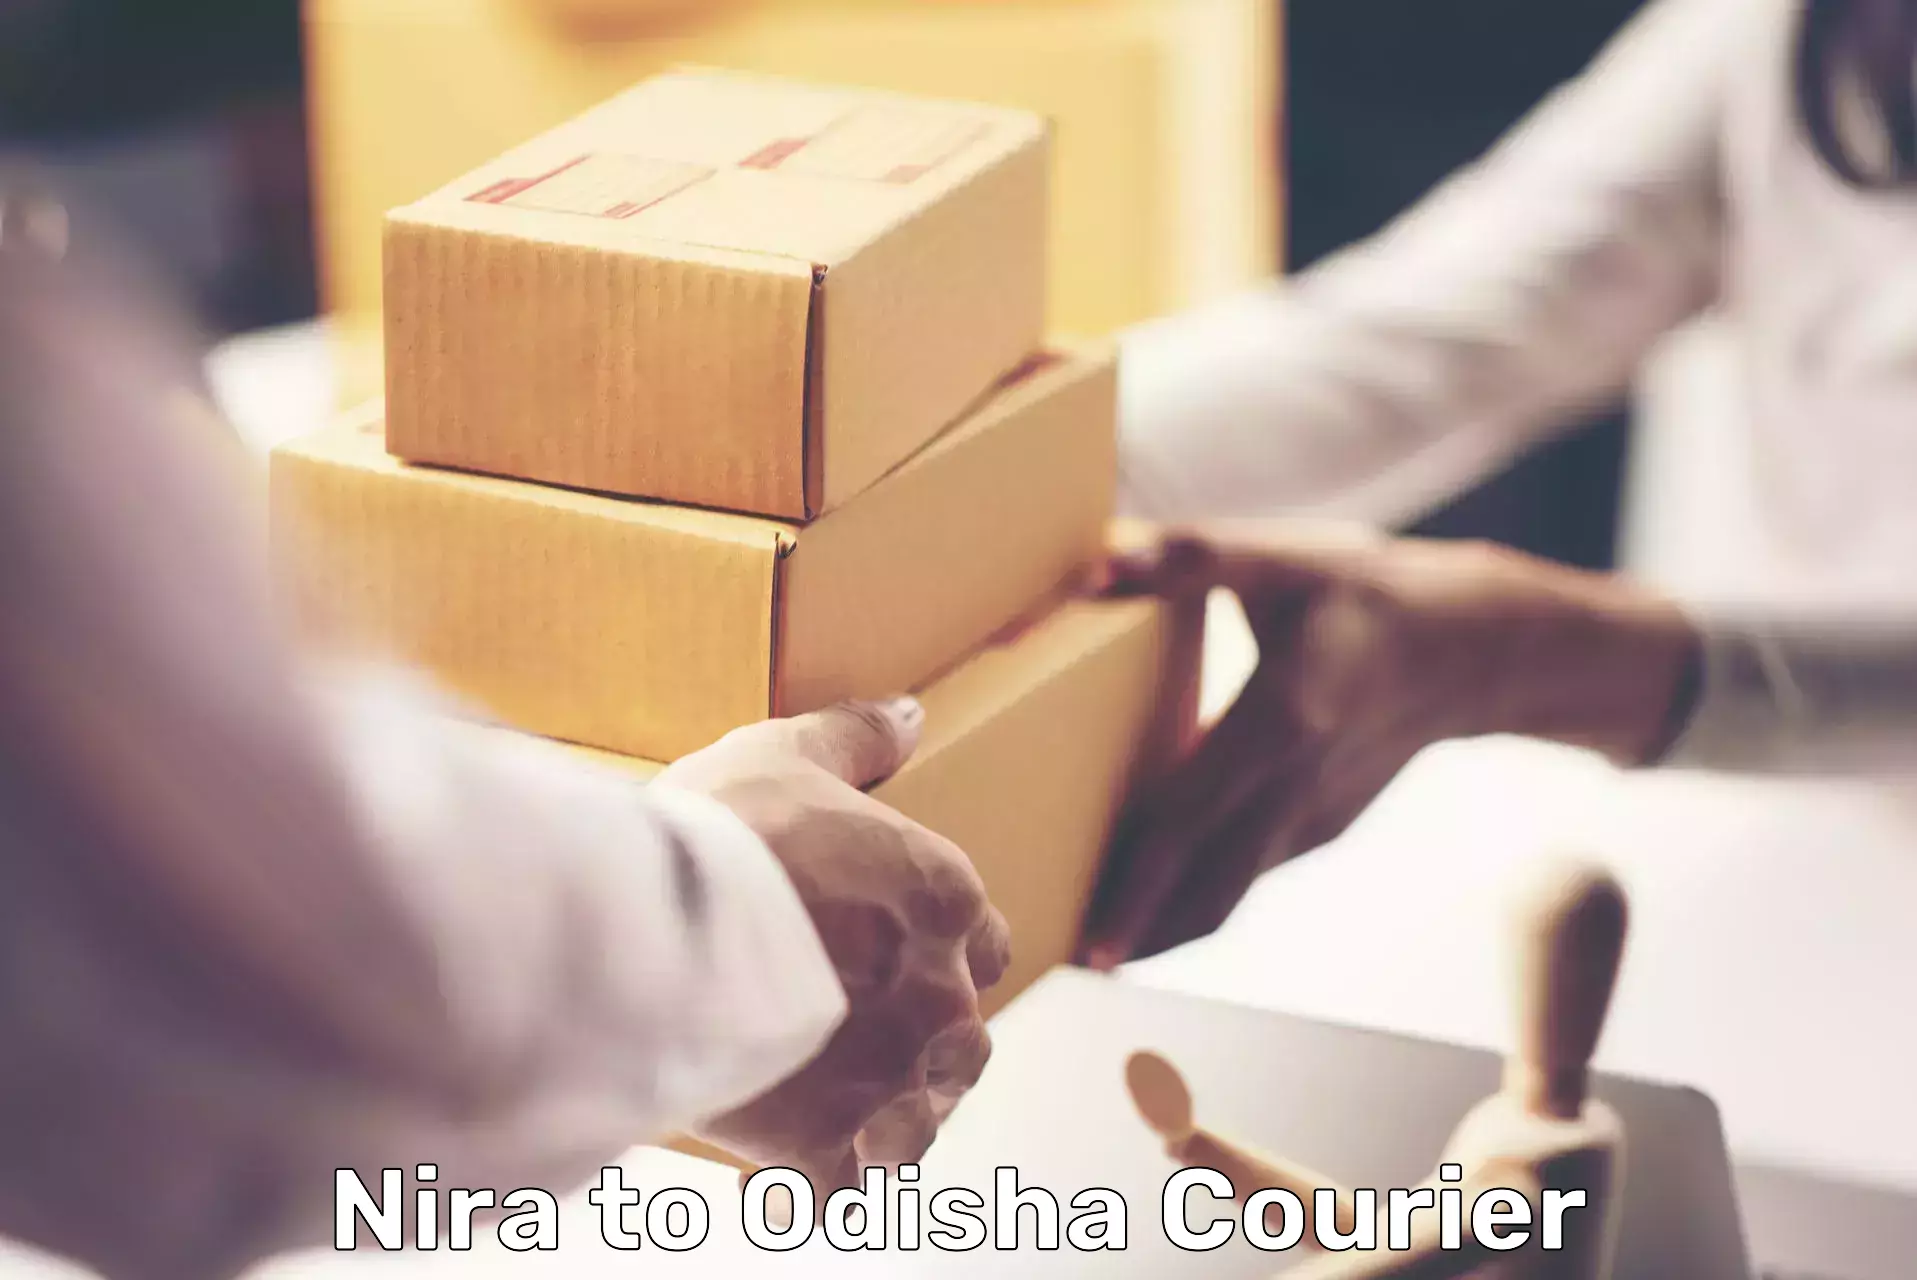 Global courier networks Nira to Odisha